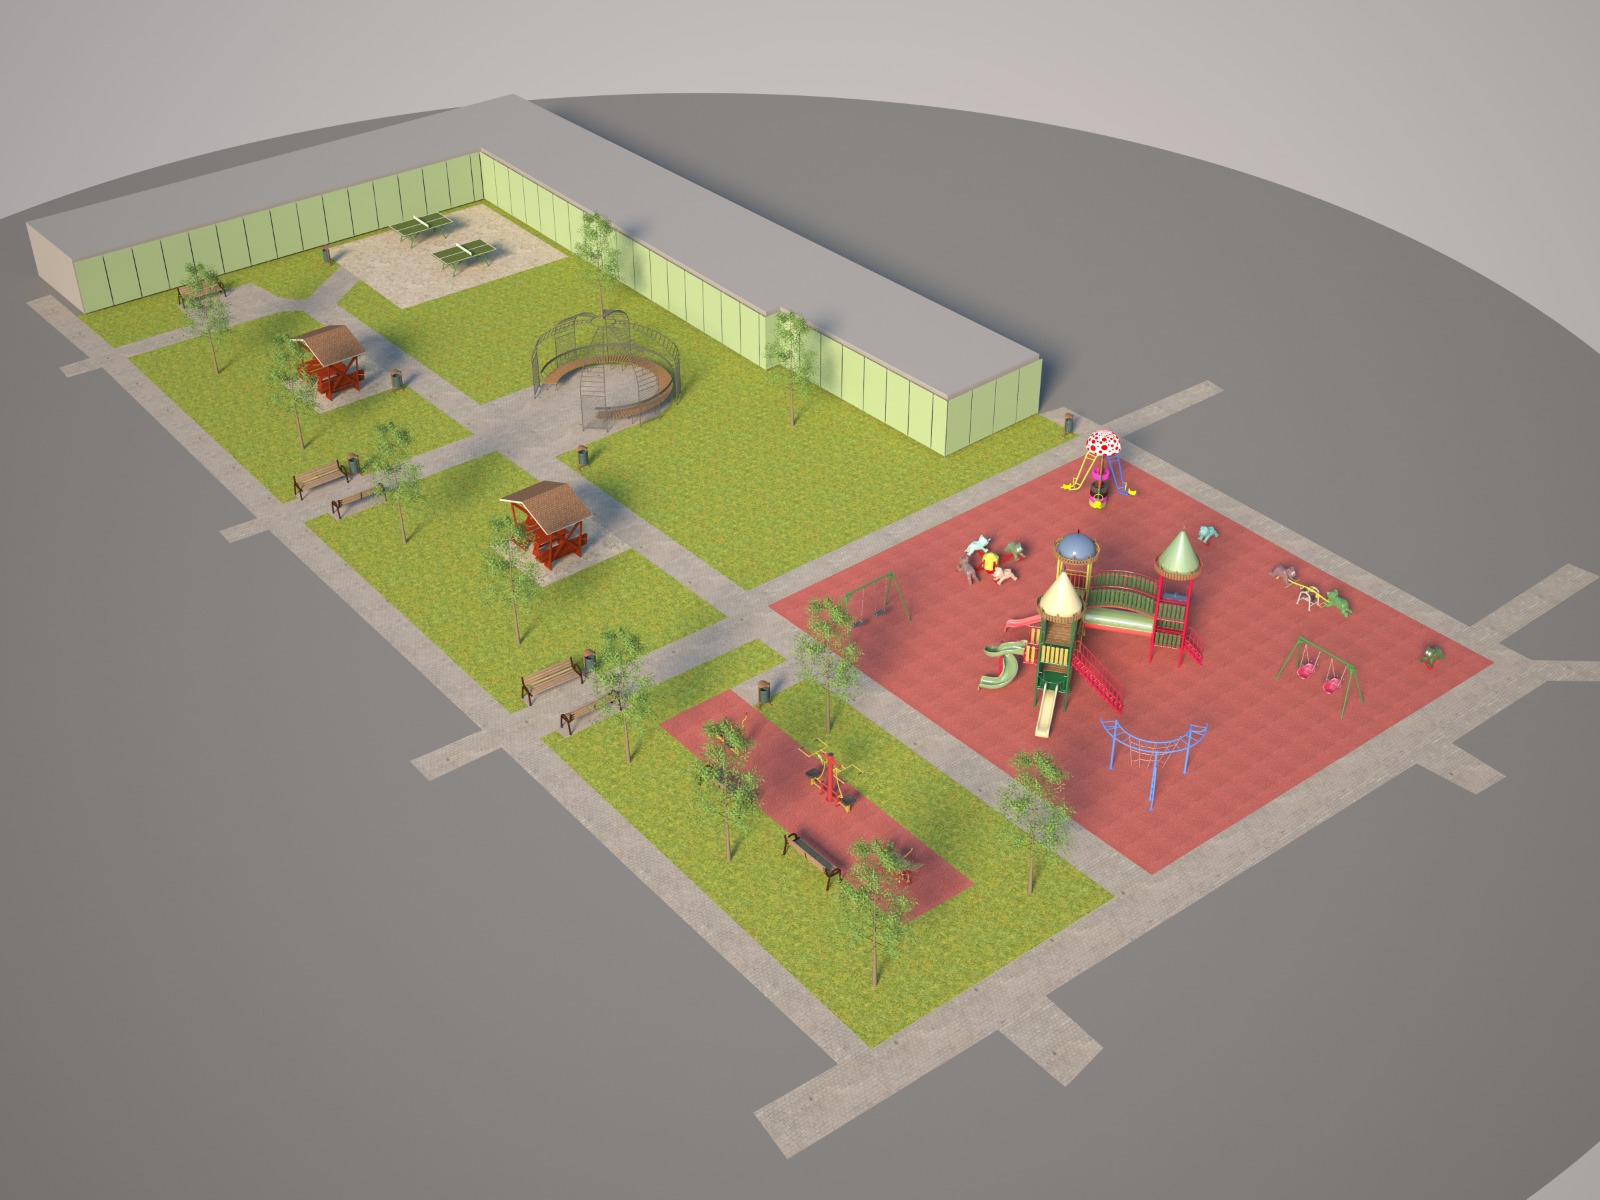 2020.01.08 - Consultare publică cu privire la reabilitarea parcului de joacă de pe Aleea Nufărului din Localiatea Baciu